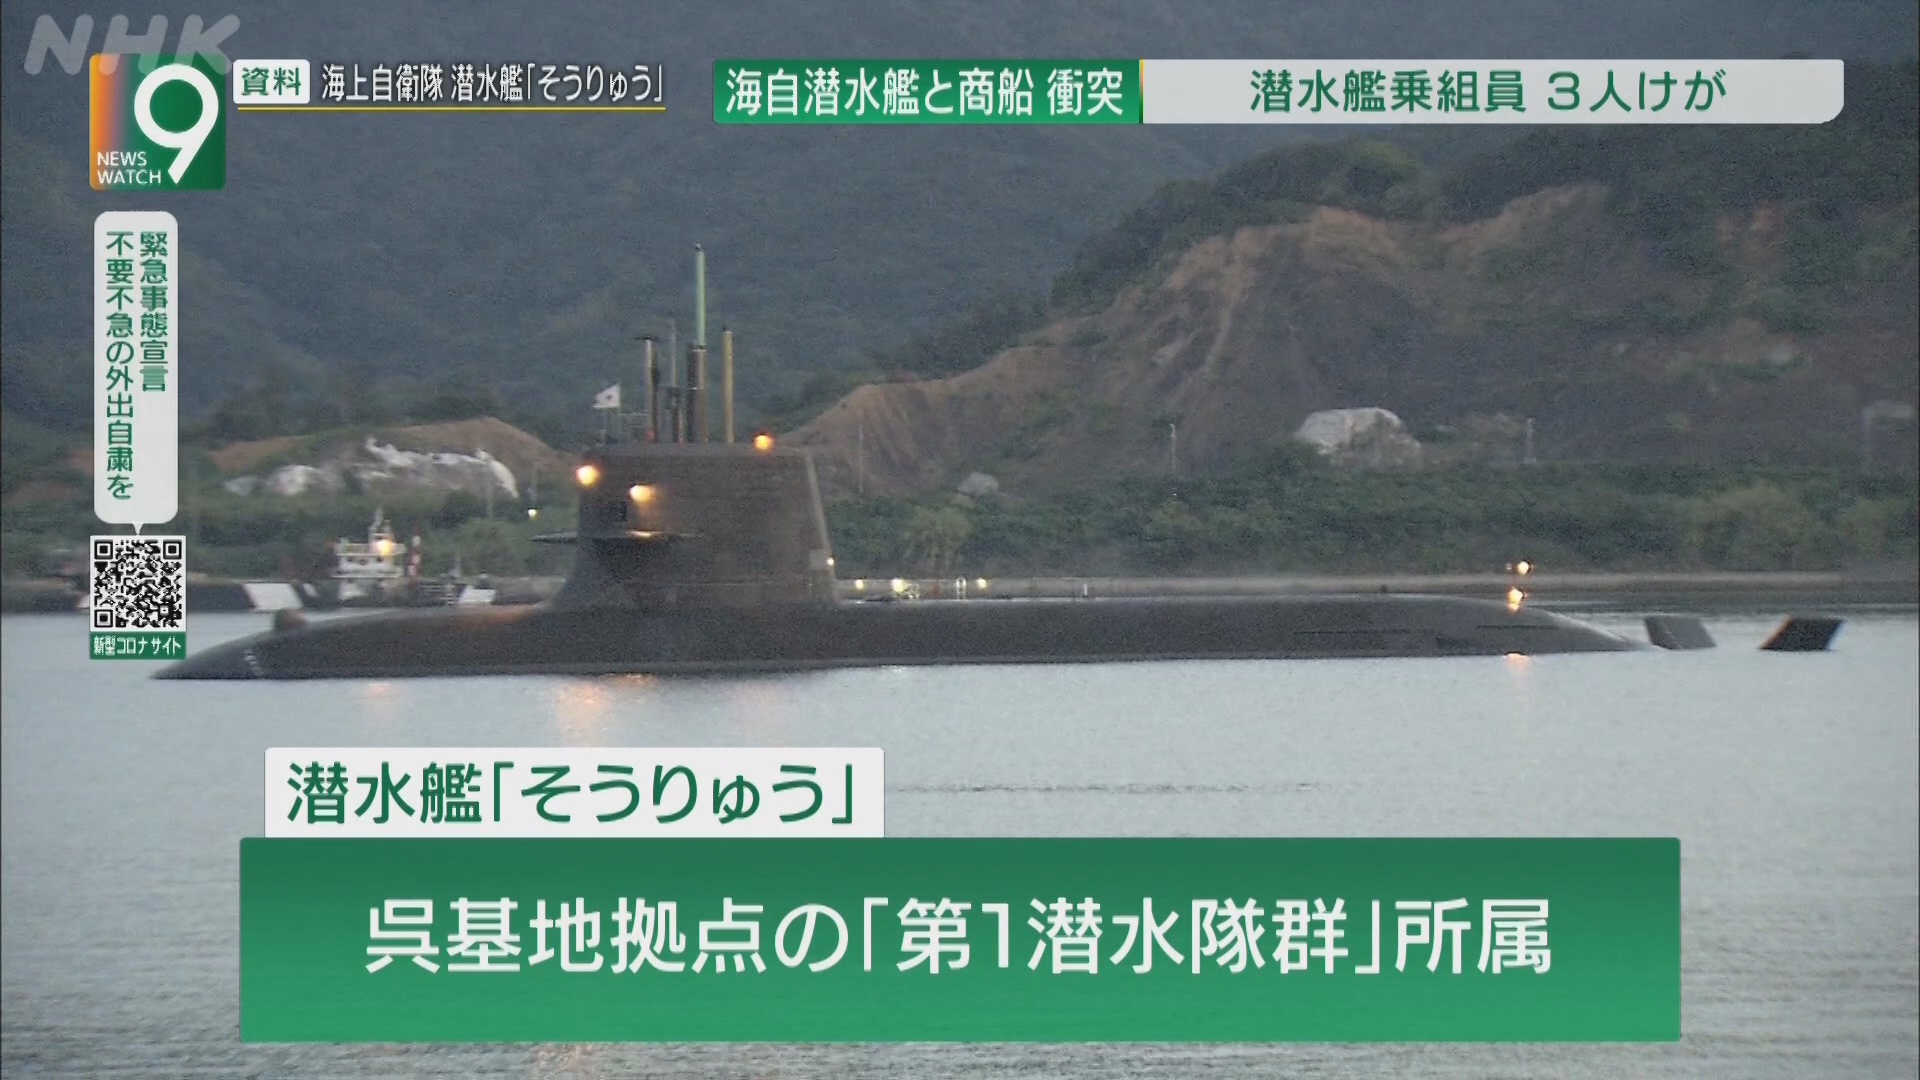  ‘소류’ 잠수함이 상선과 충돌한 것을 보도한 NHK 화면